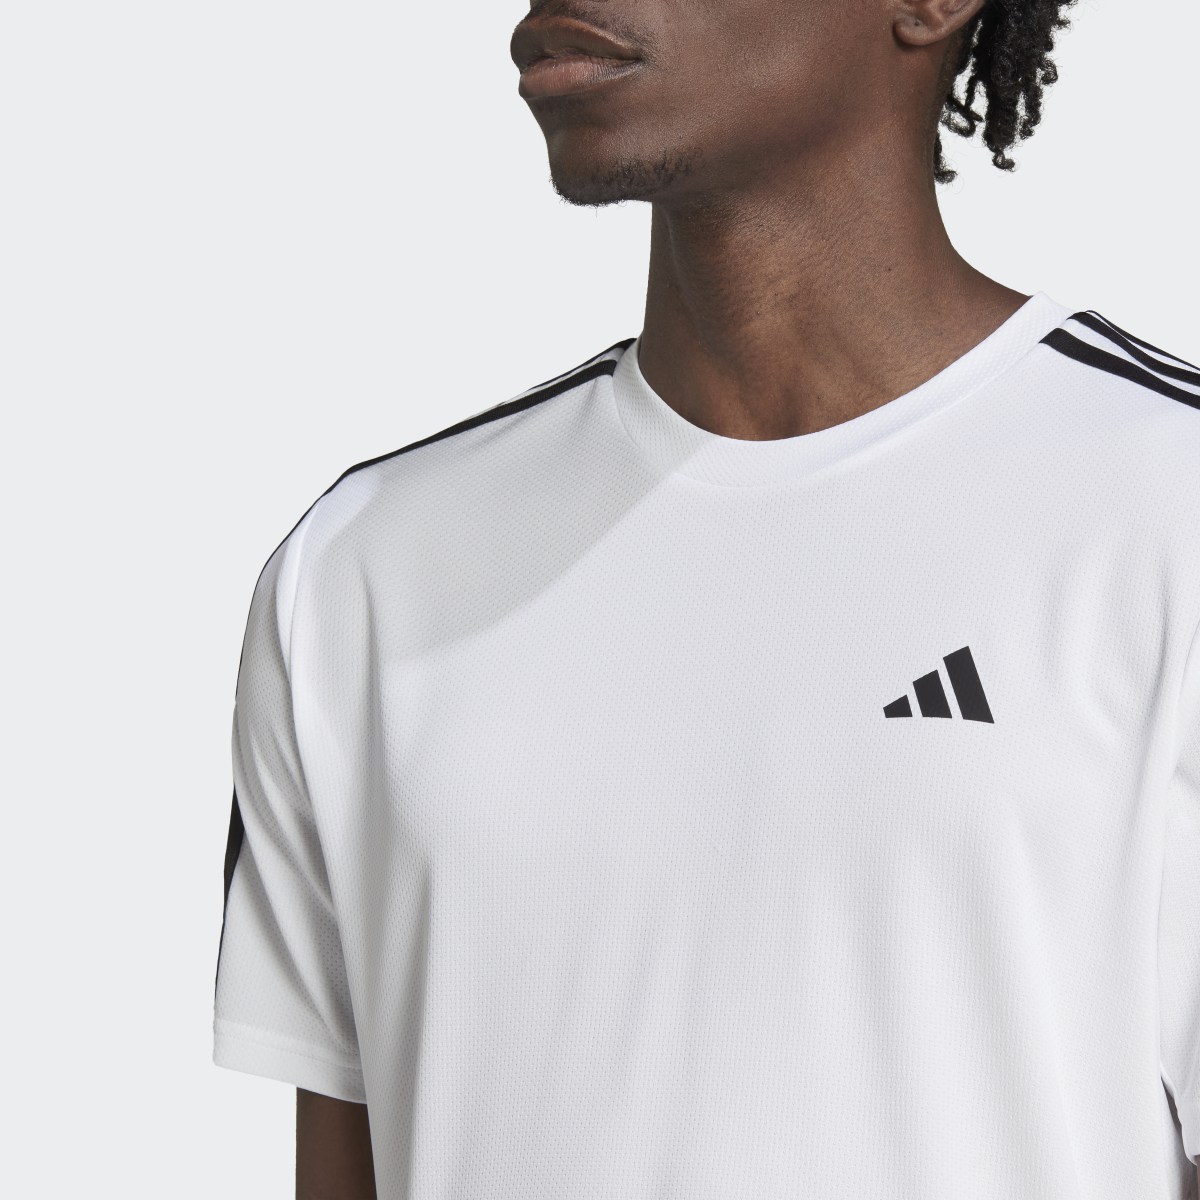 Adidas Train Essentials 3-Streifen Training T-Shirt. 6